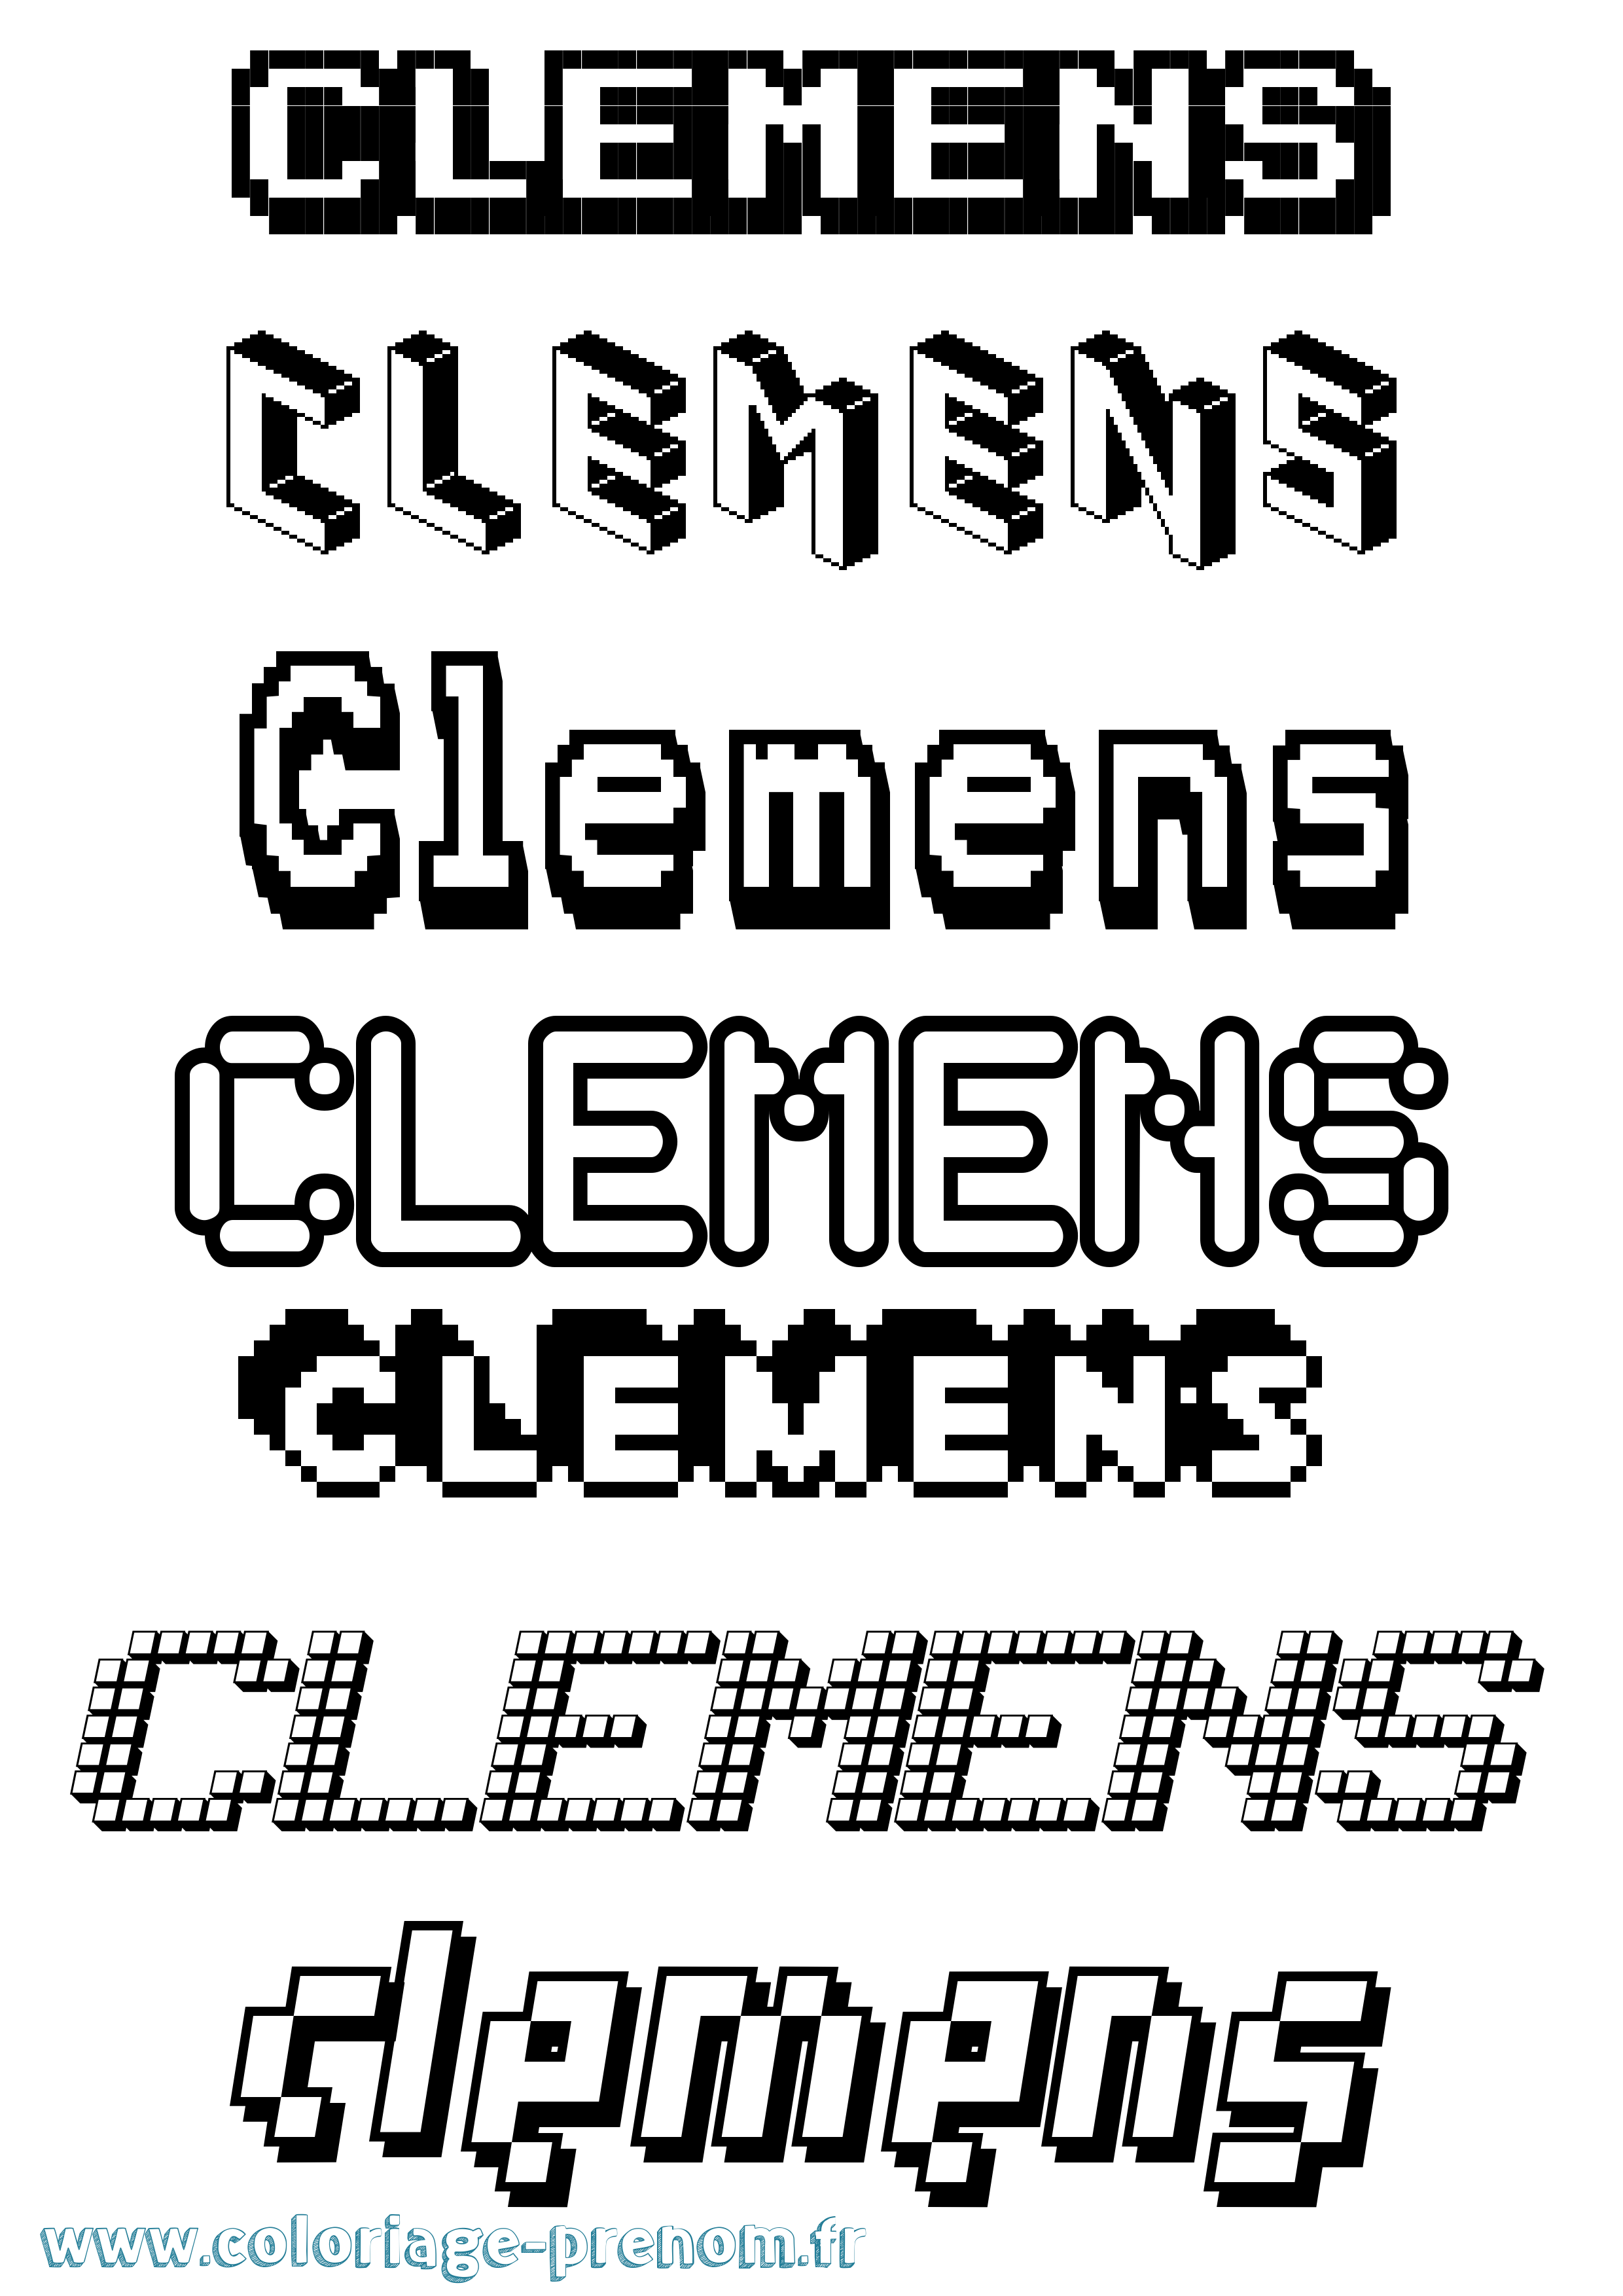 Coloriage prénom Clemens Pixel